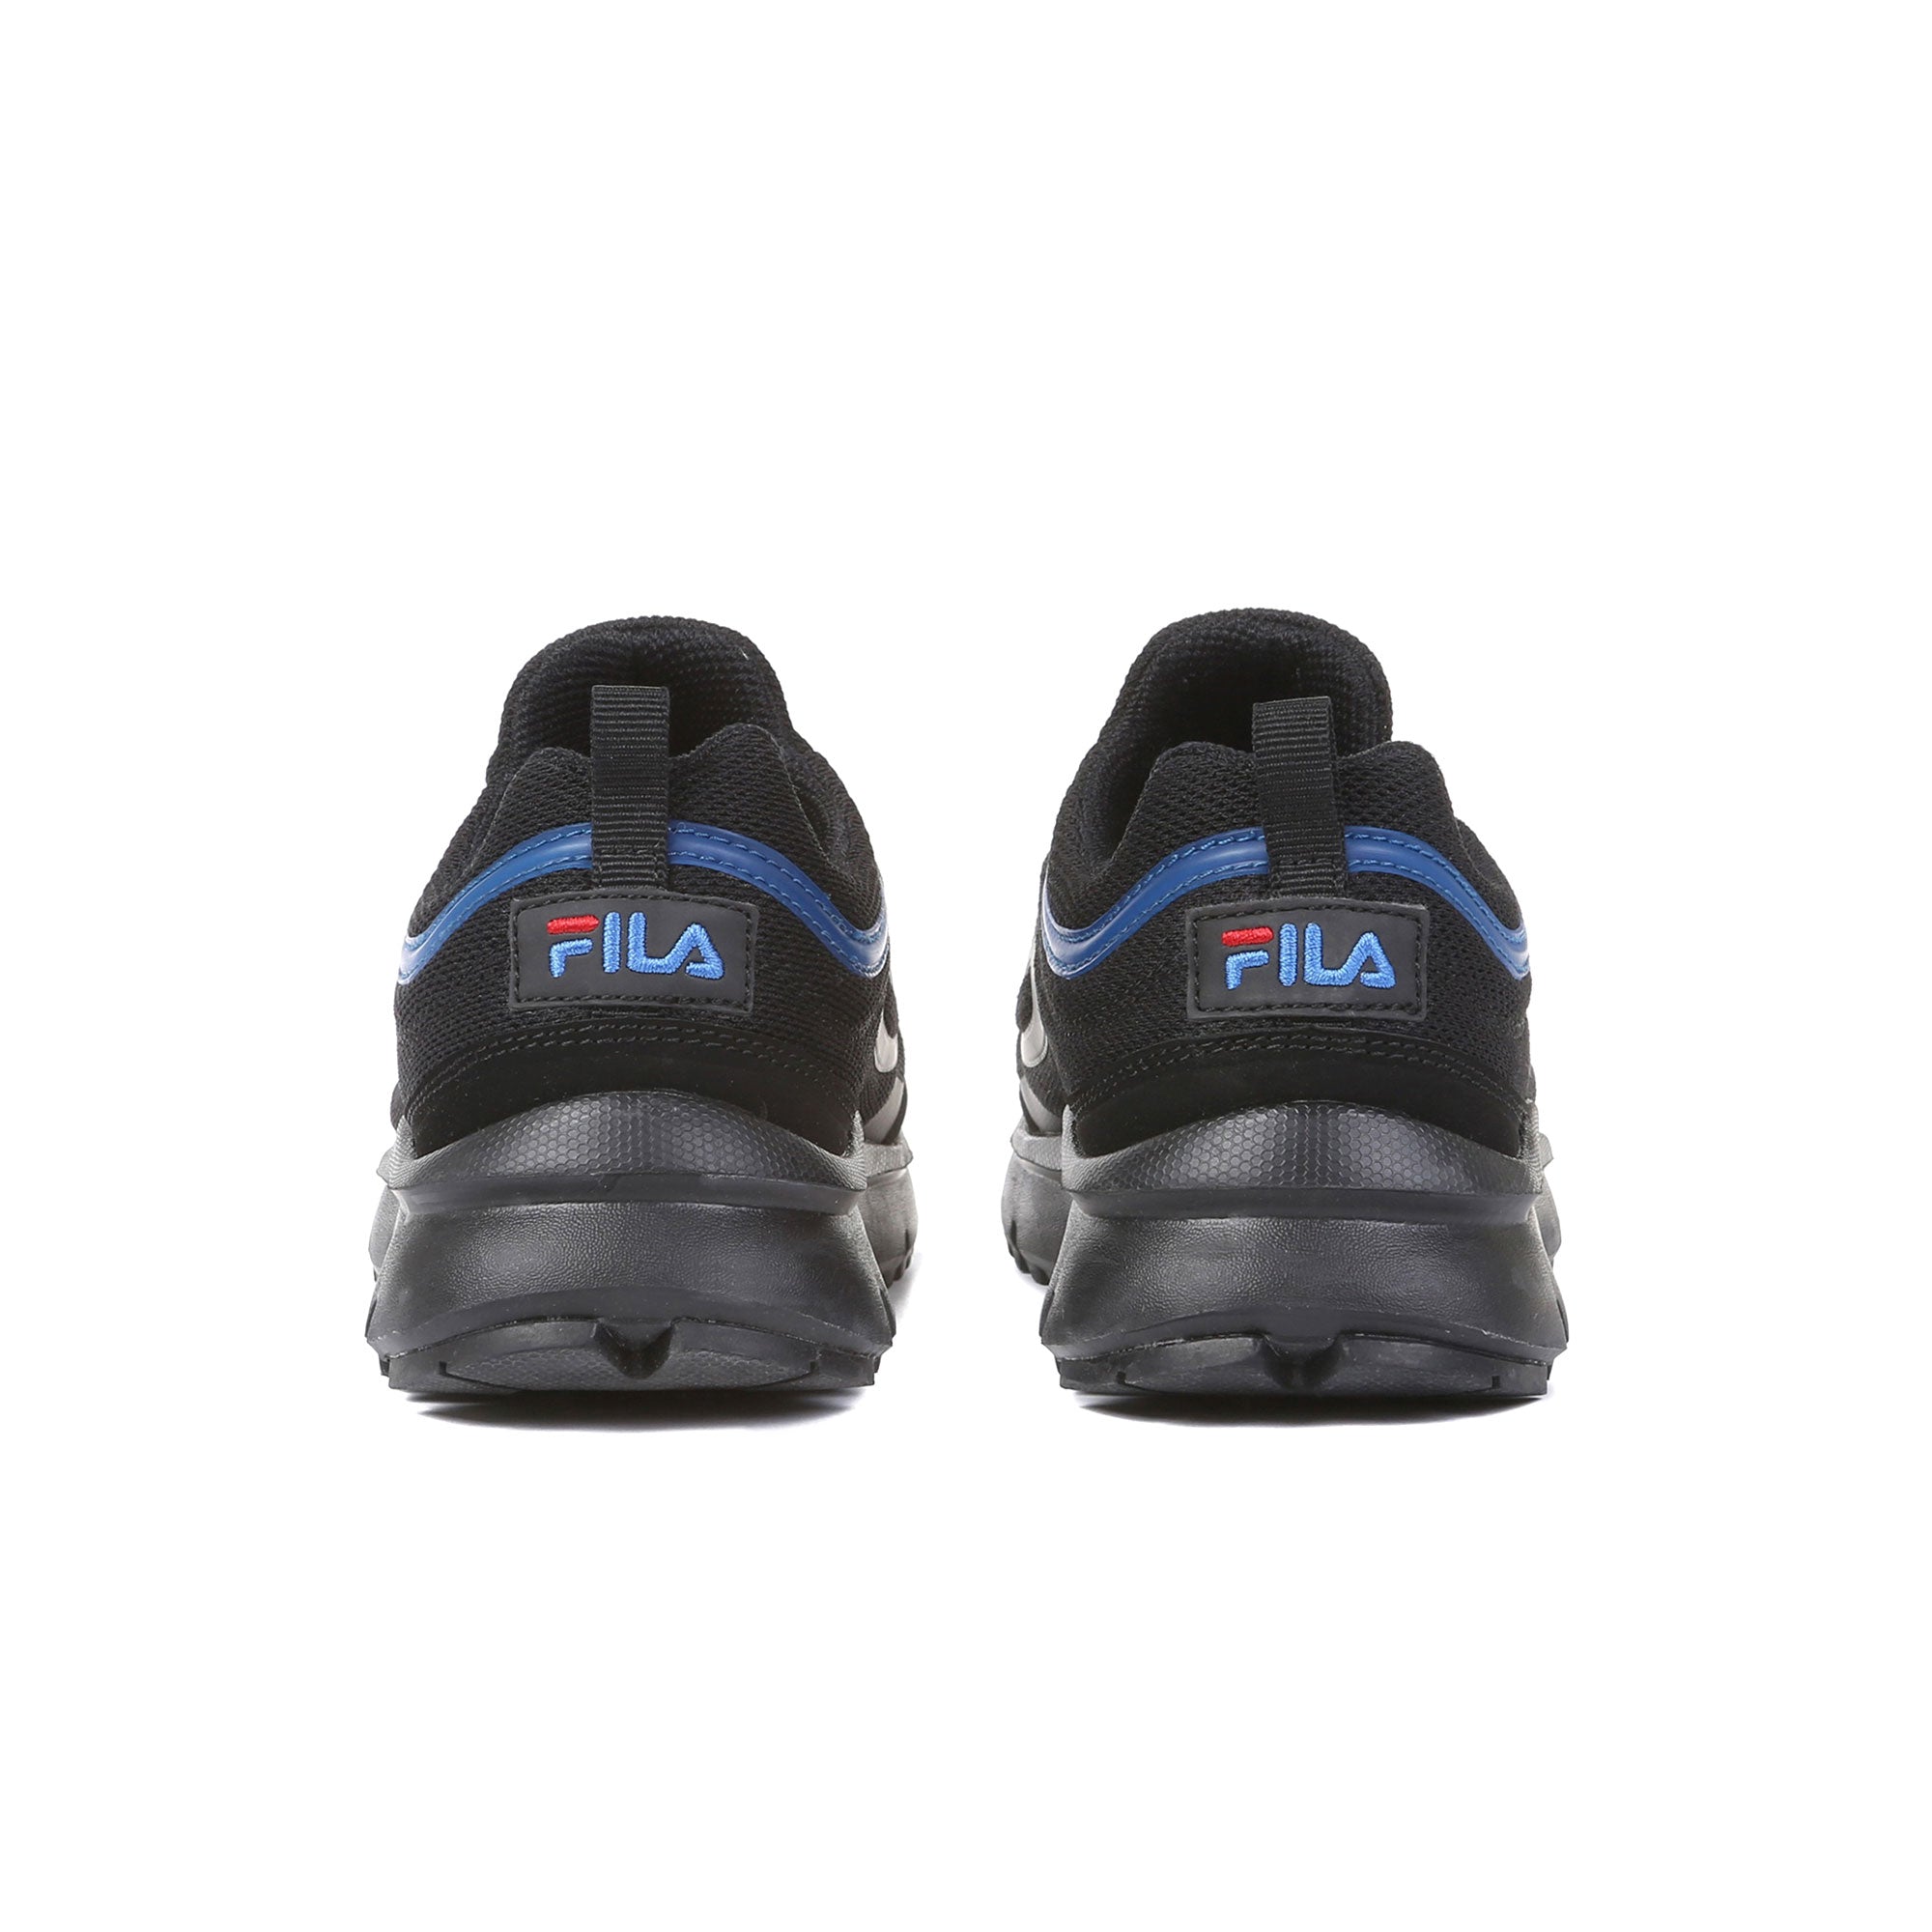 Giày sneaker trẻ em Fila Disruptor Trainer 98/20 Kd - 3GM01259D